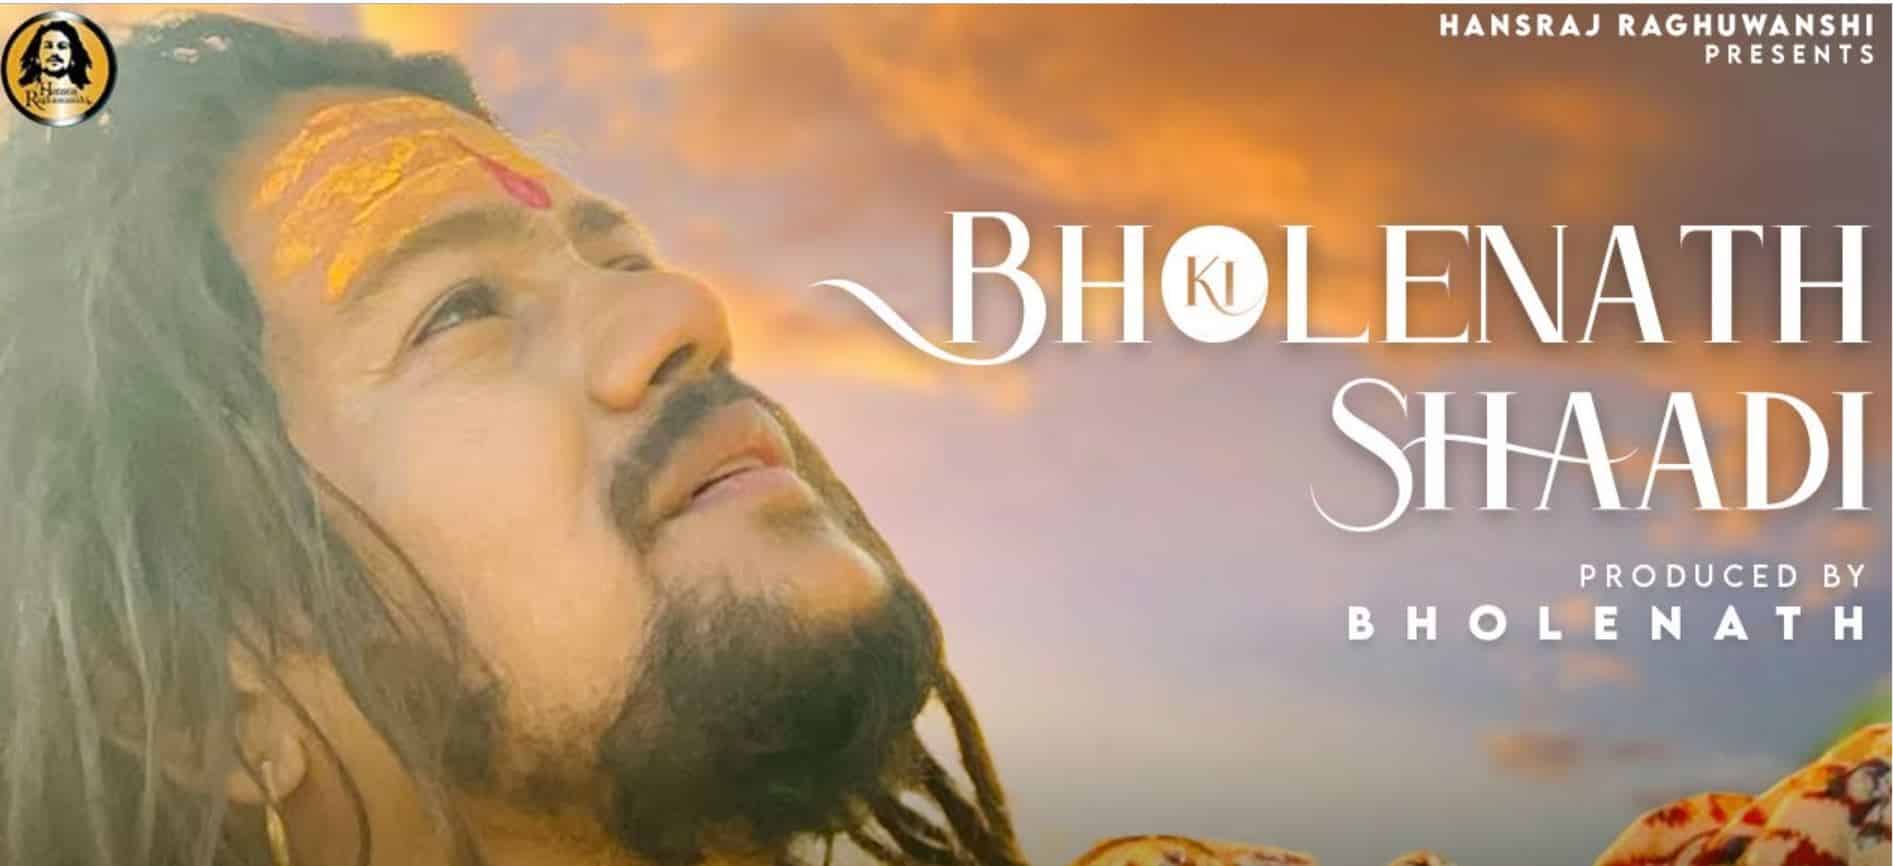 Bholenath Ki Shadi Lyrics In Hindi - Hansraj Raghuwanshi